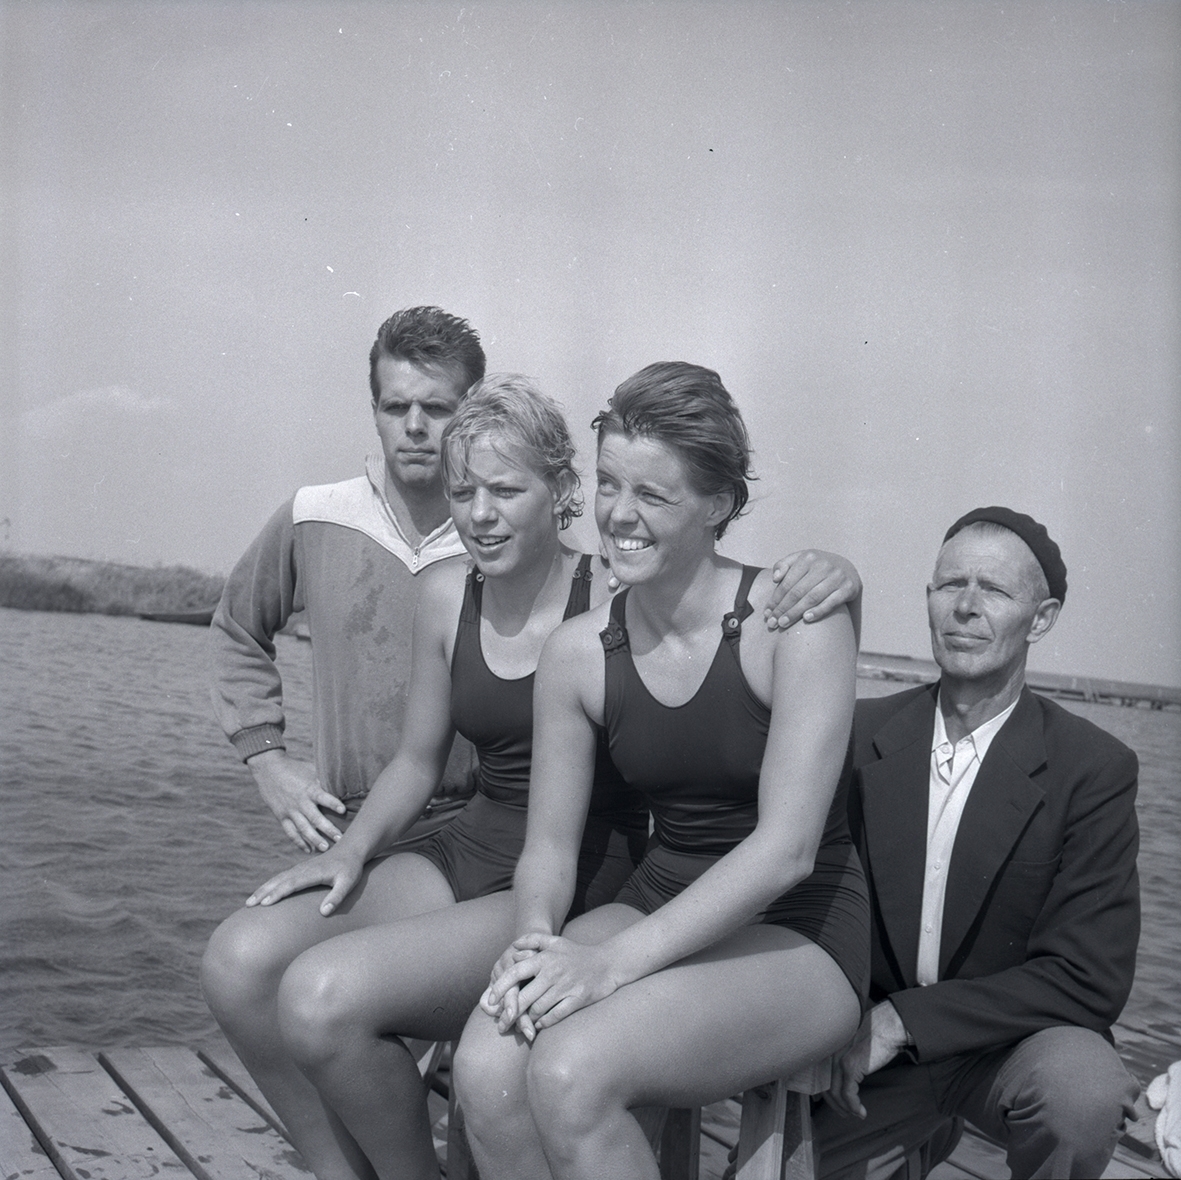 Ölands mästerskap i simning. Grupporträtt på två kvinnor i baddräkt och två män.